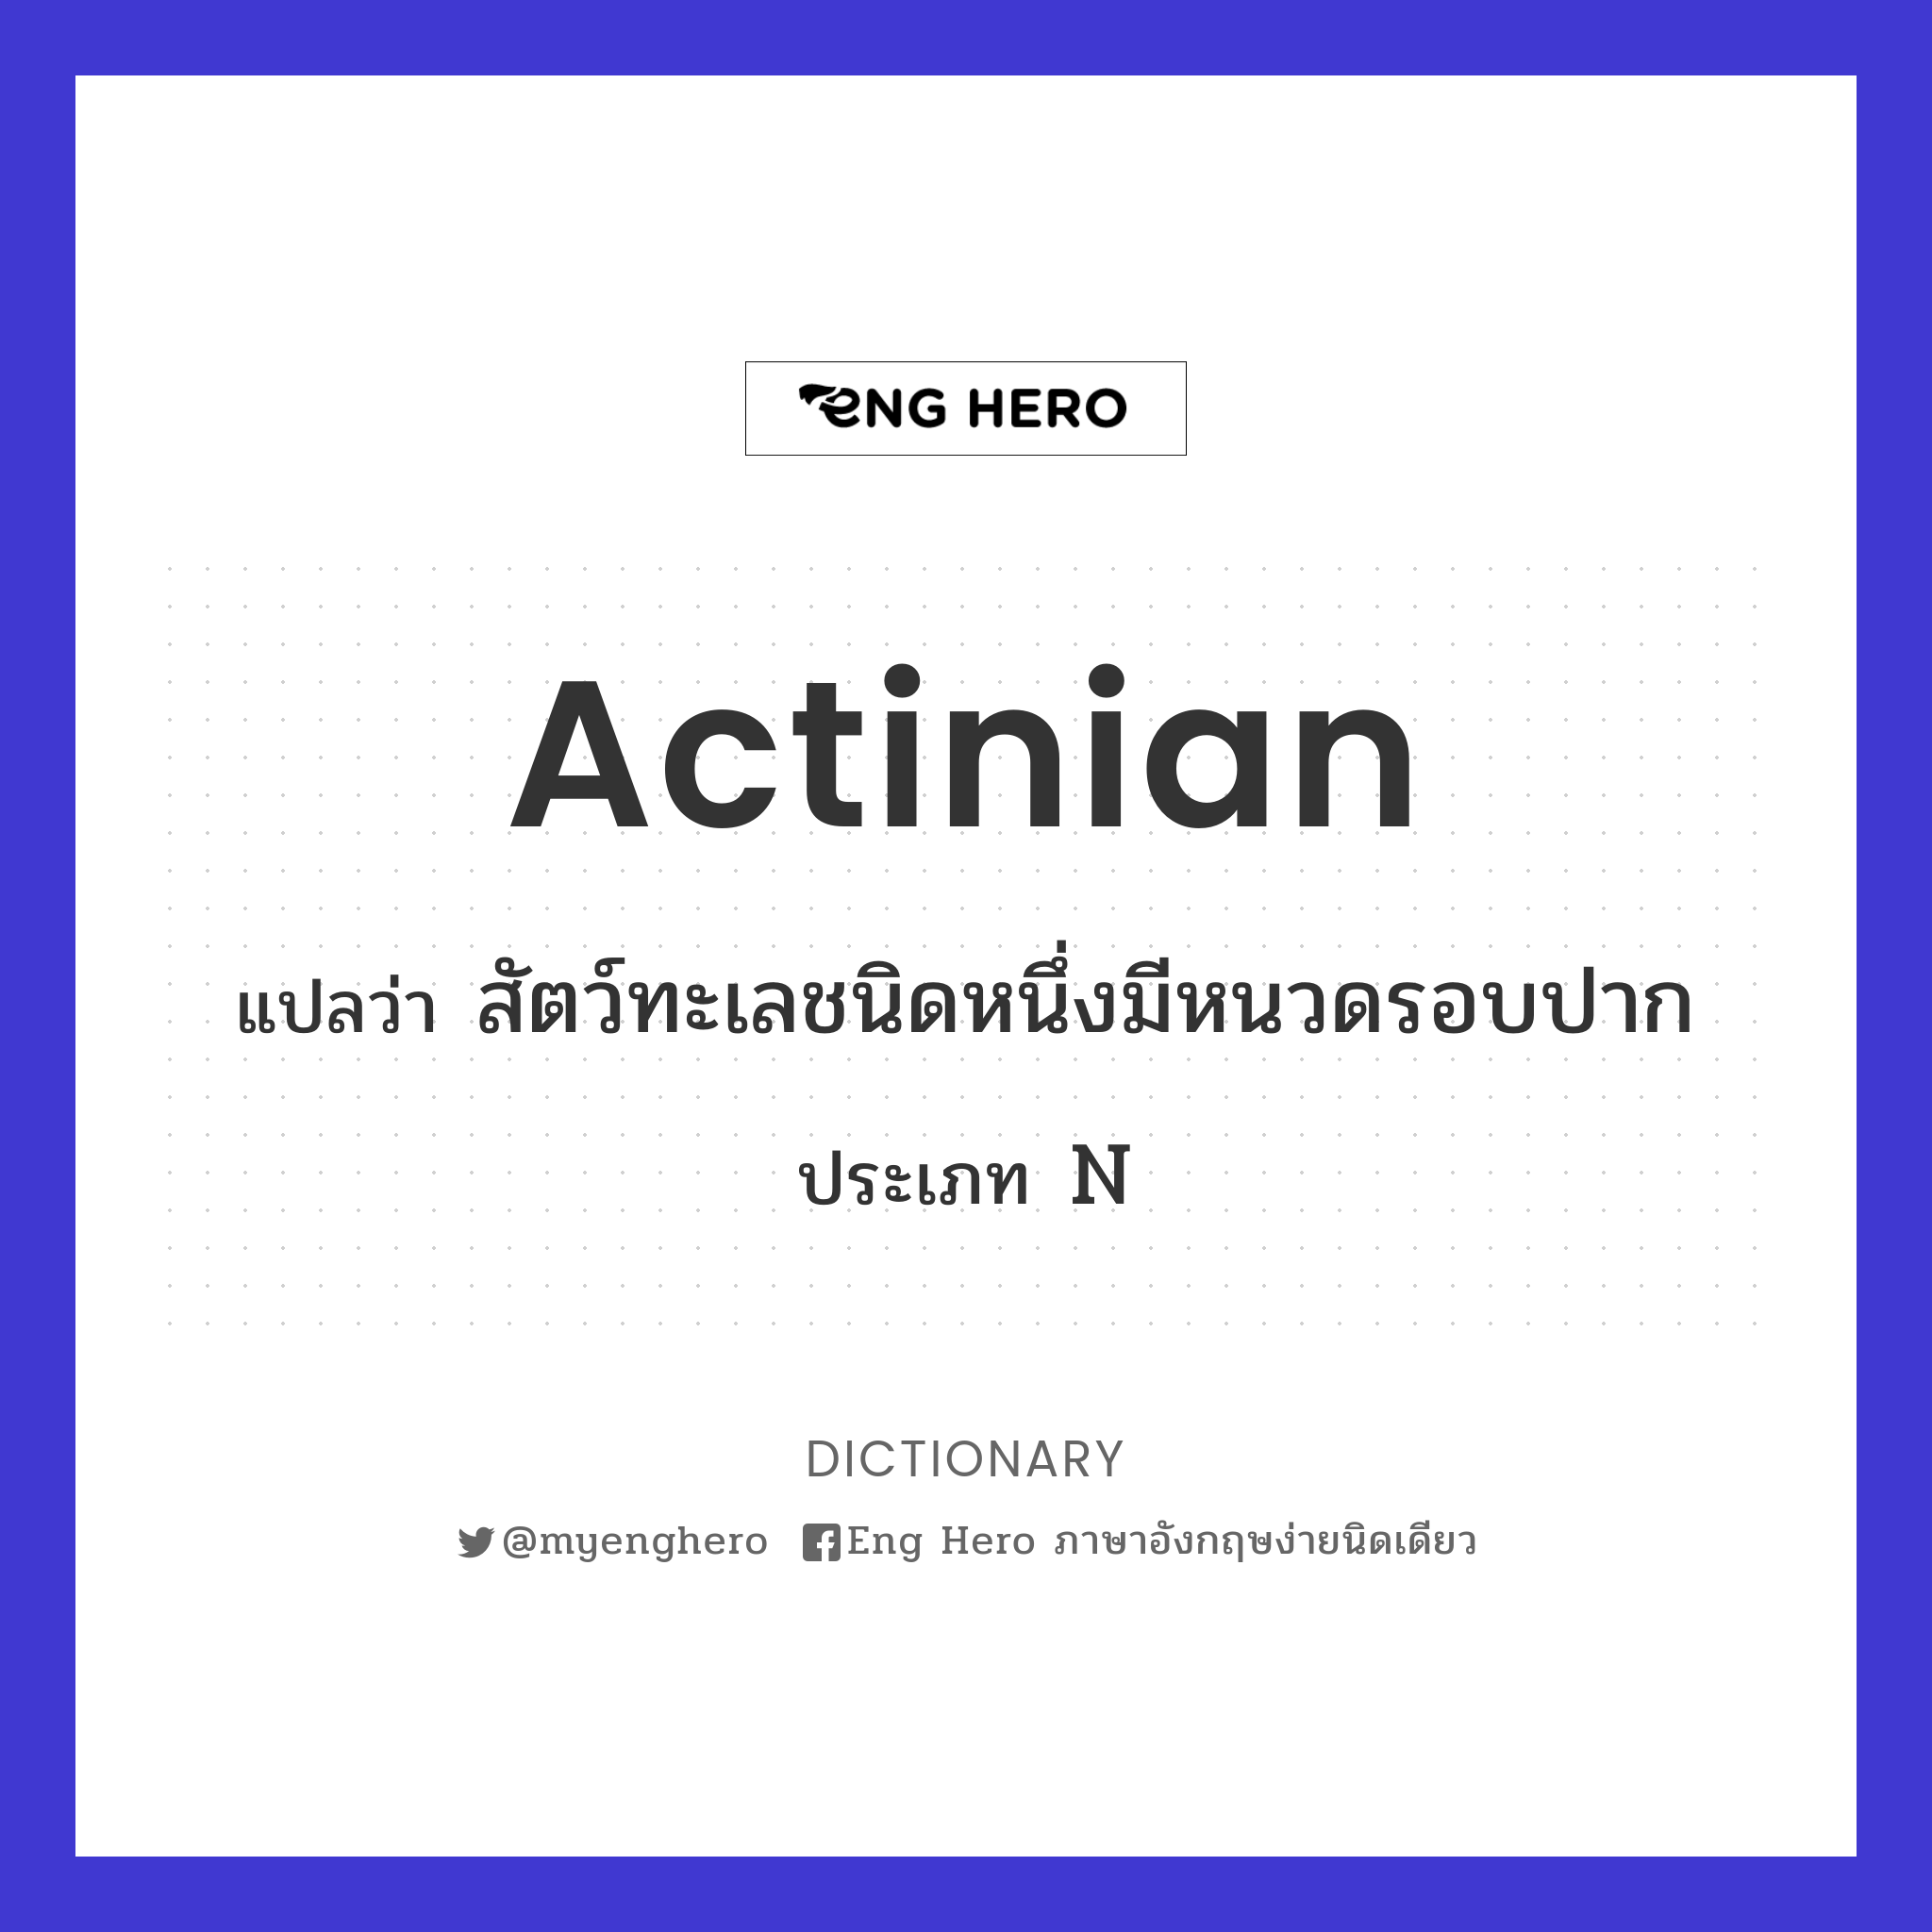 actinian